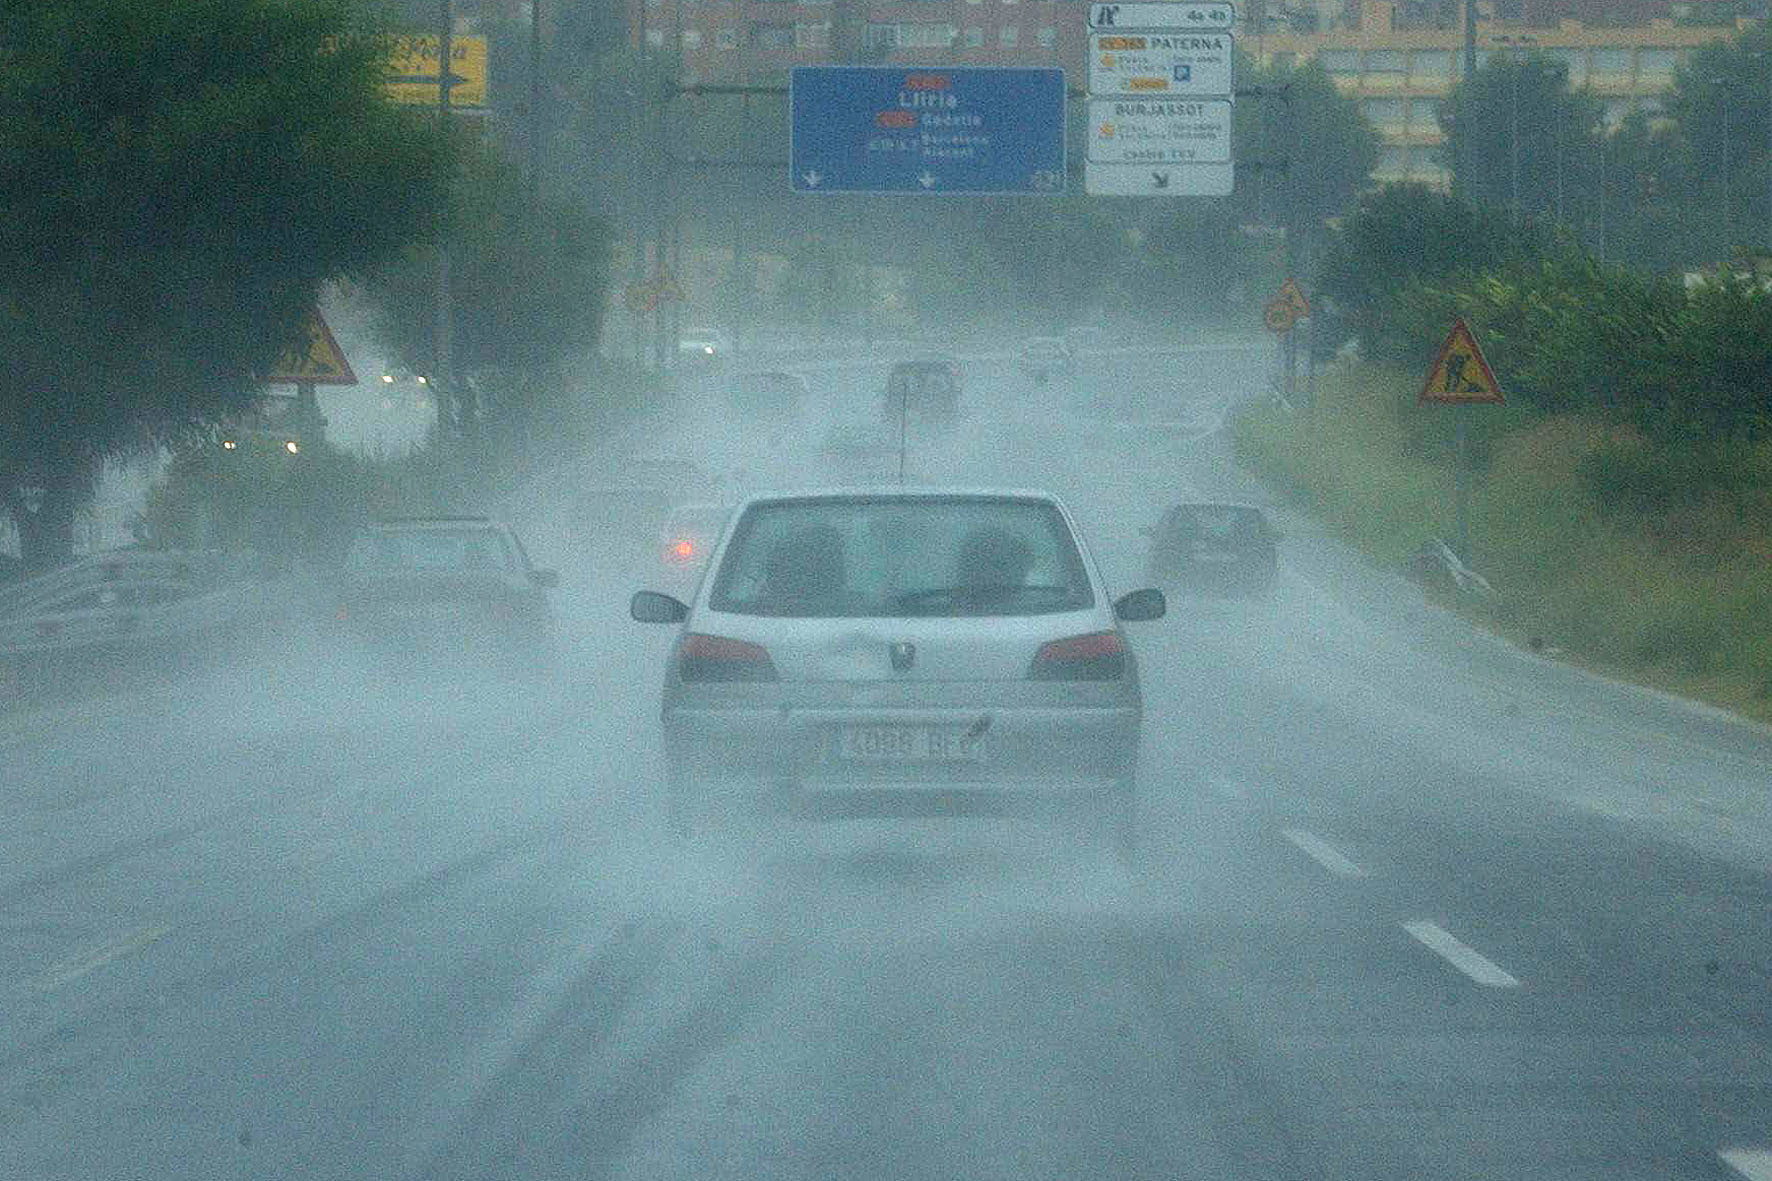 Llega la DANA con lluvias extremas y riesgo de inundaciones: qué hacer si vamos en el coche